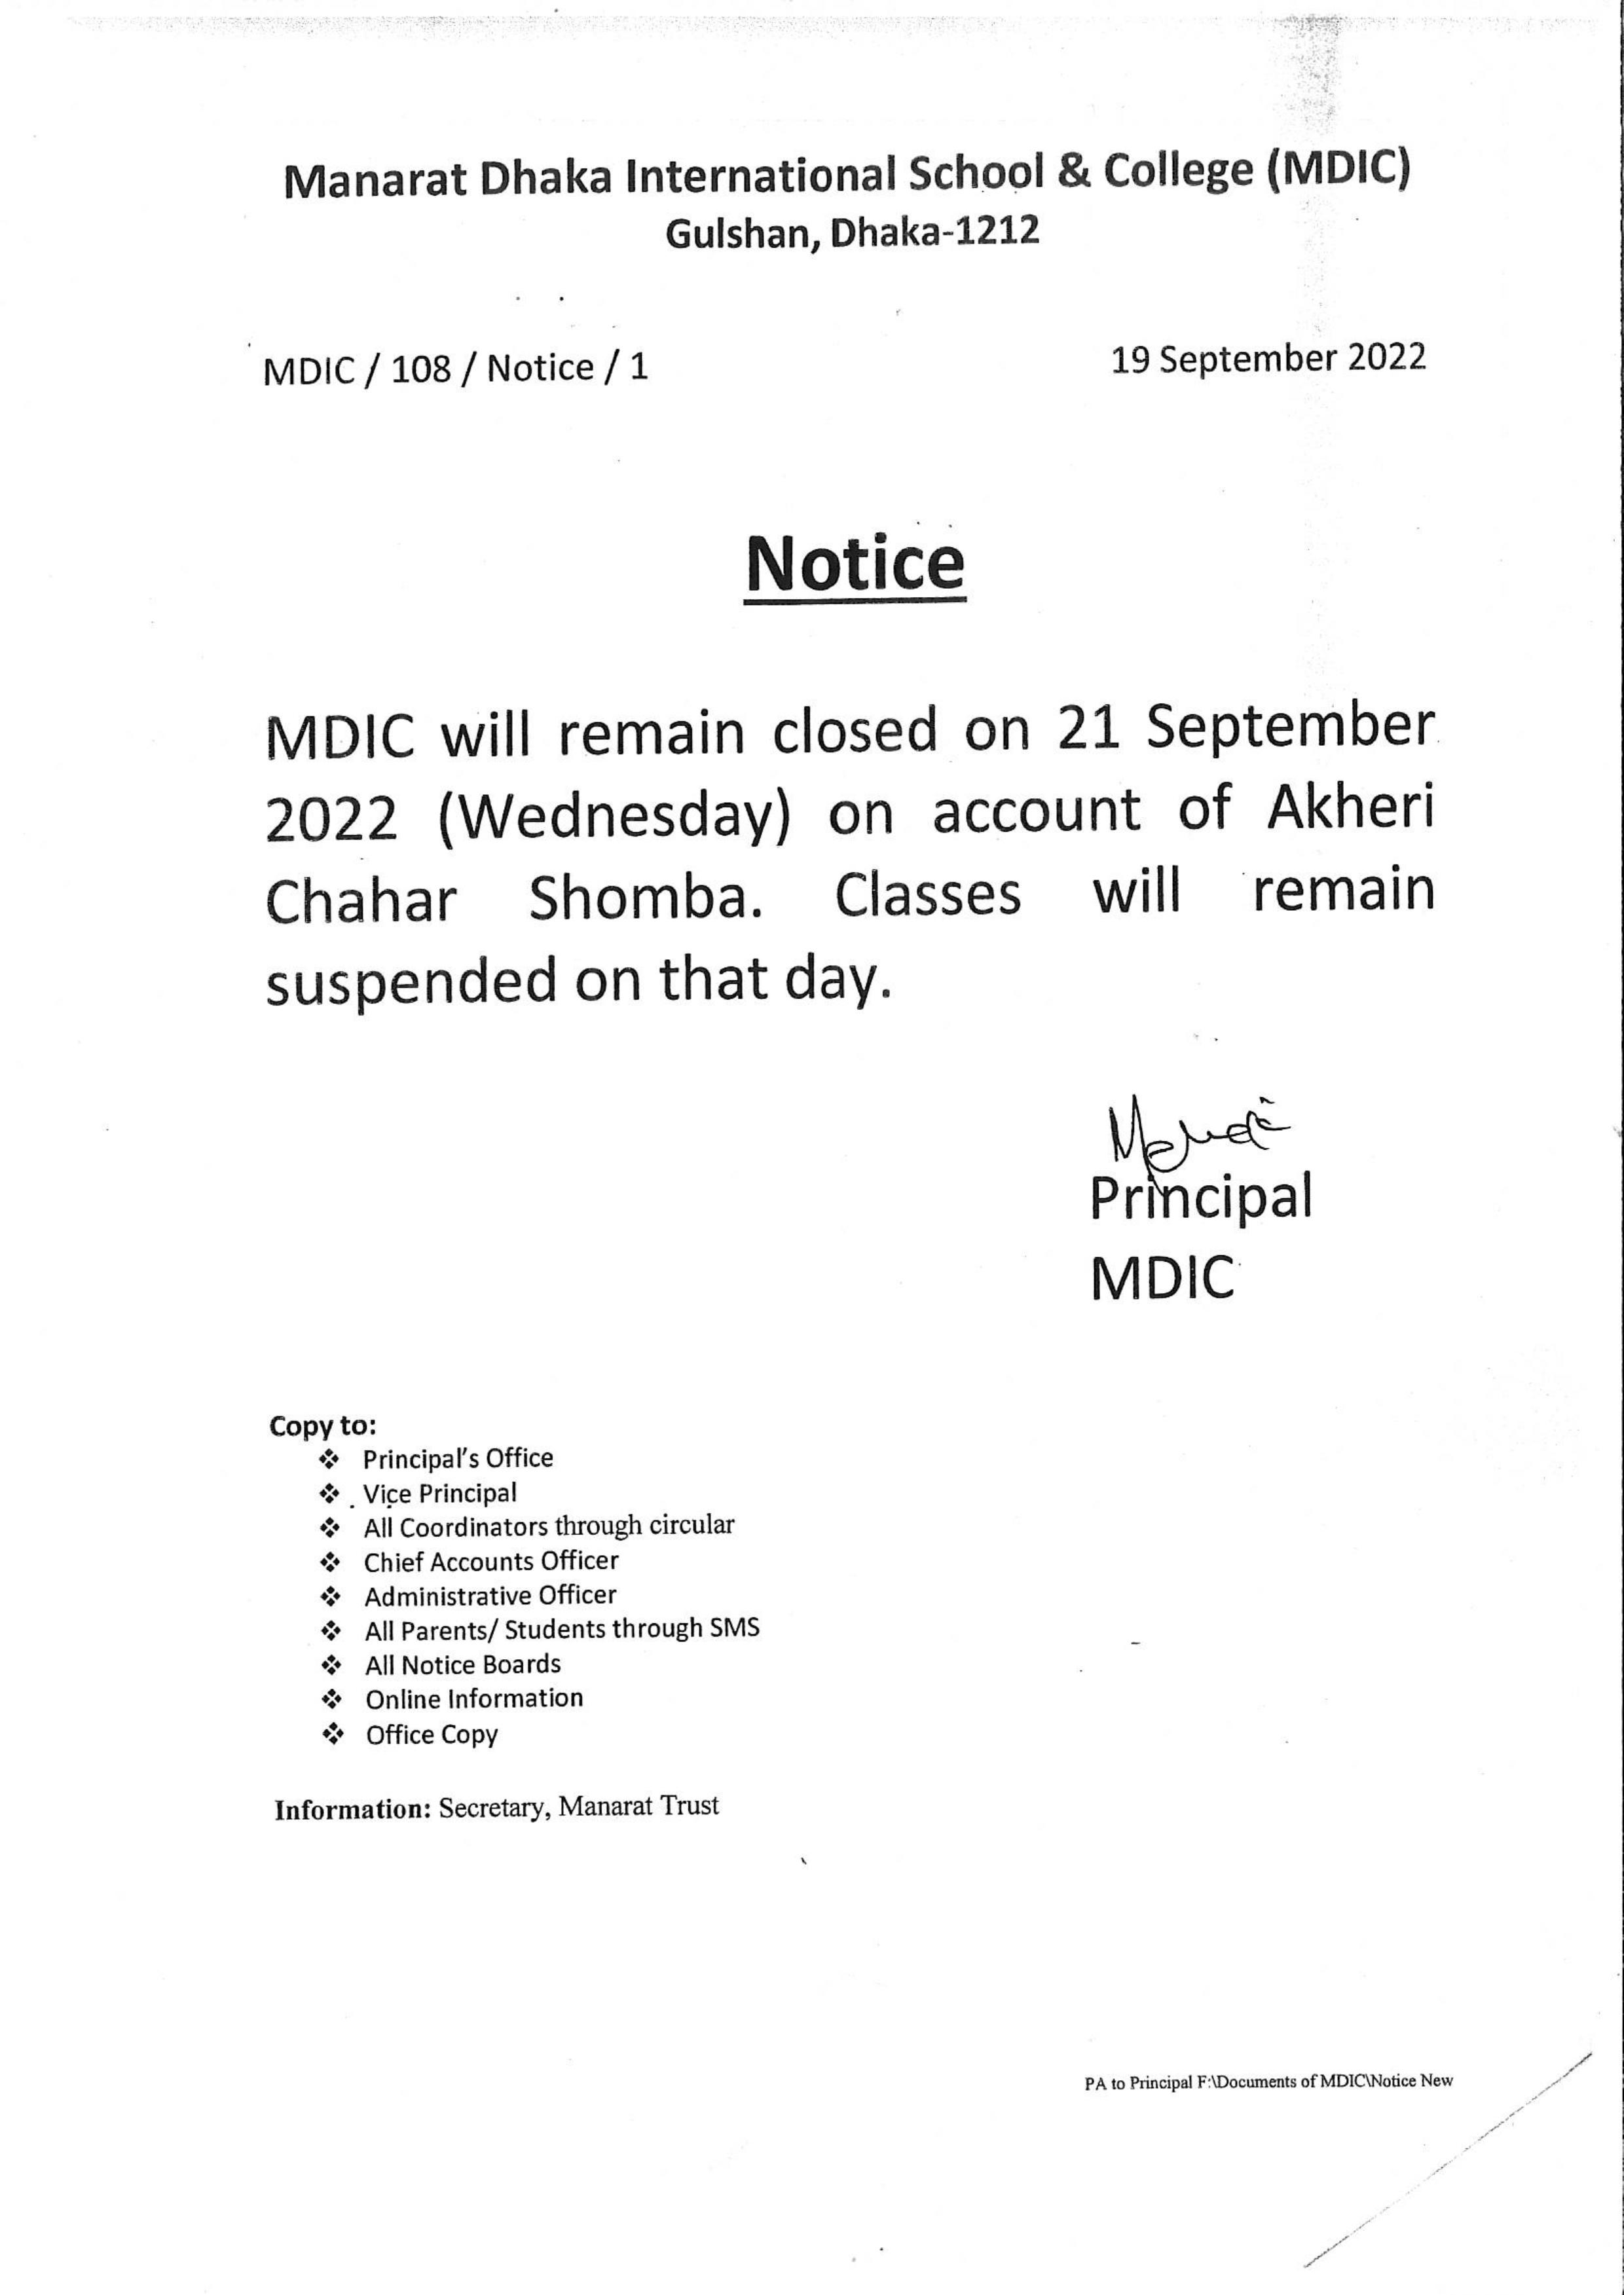 Notice for Akheri Chahar Shomba